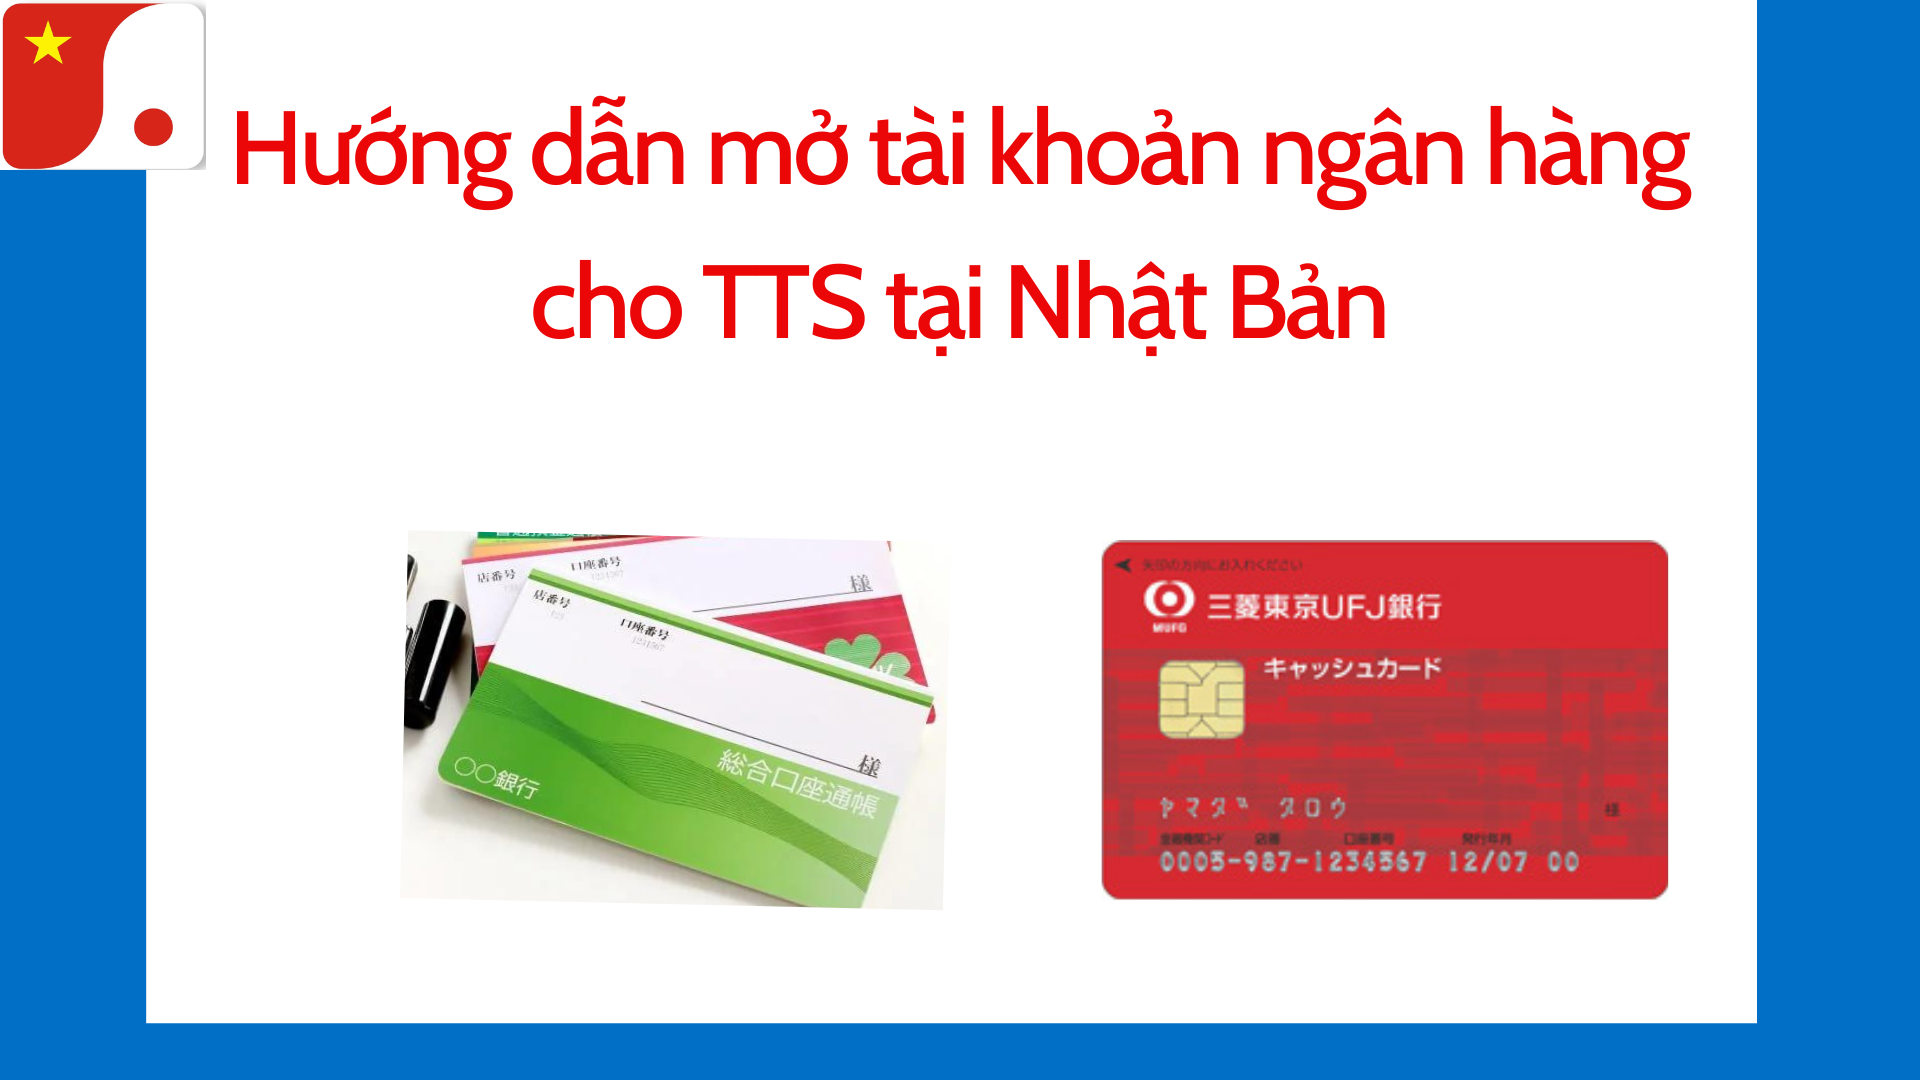 Hướng dẫn mở tài khoản ngân hàng cho TTS tại Nhật Bản